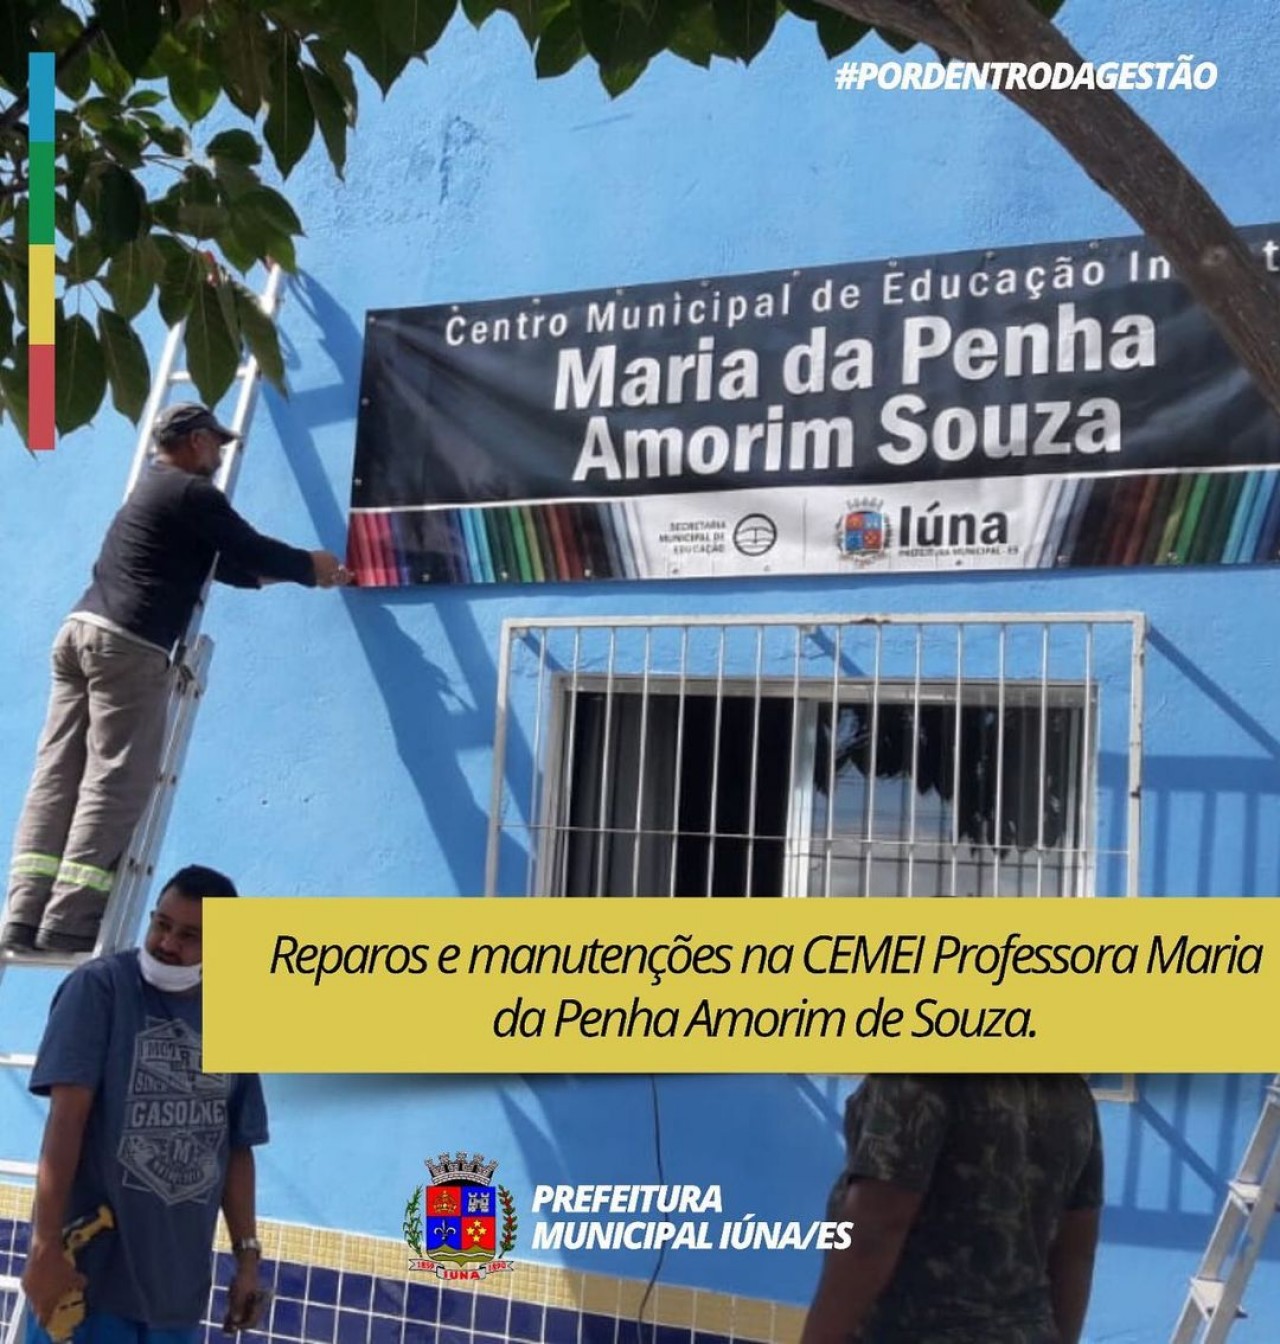 OBRA 158 - Reparos e manutenções na CEMEI Professora Maria da Penha Amorim de Souz